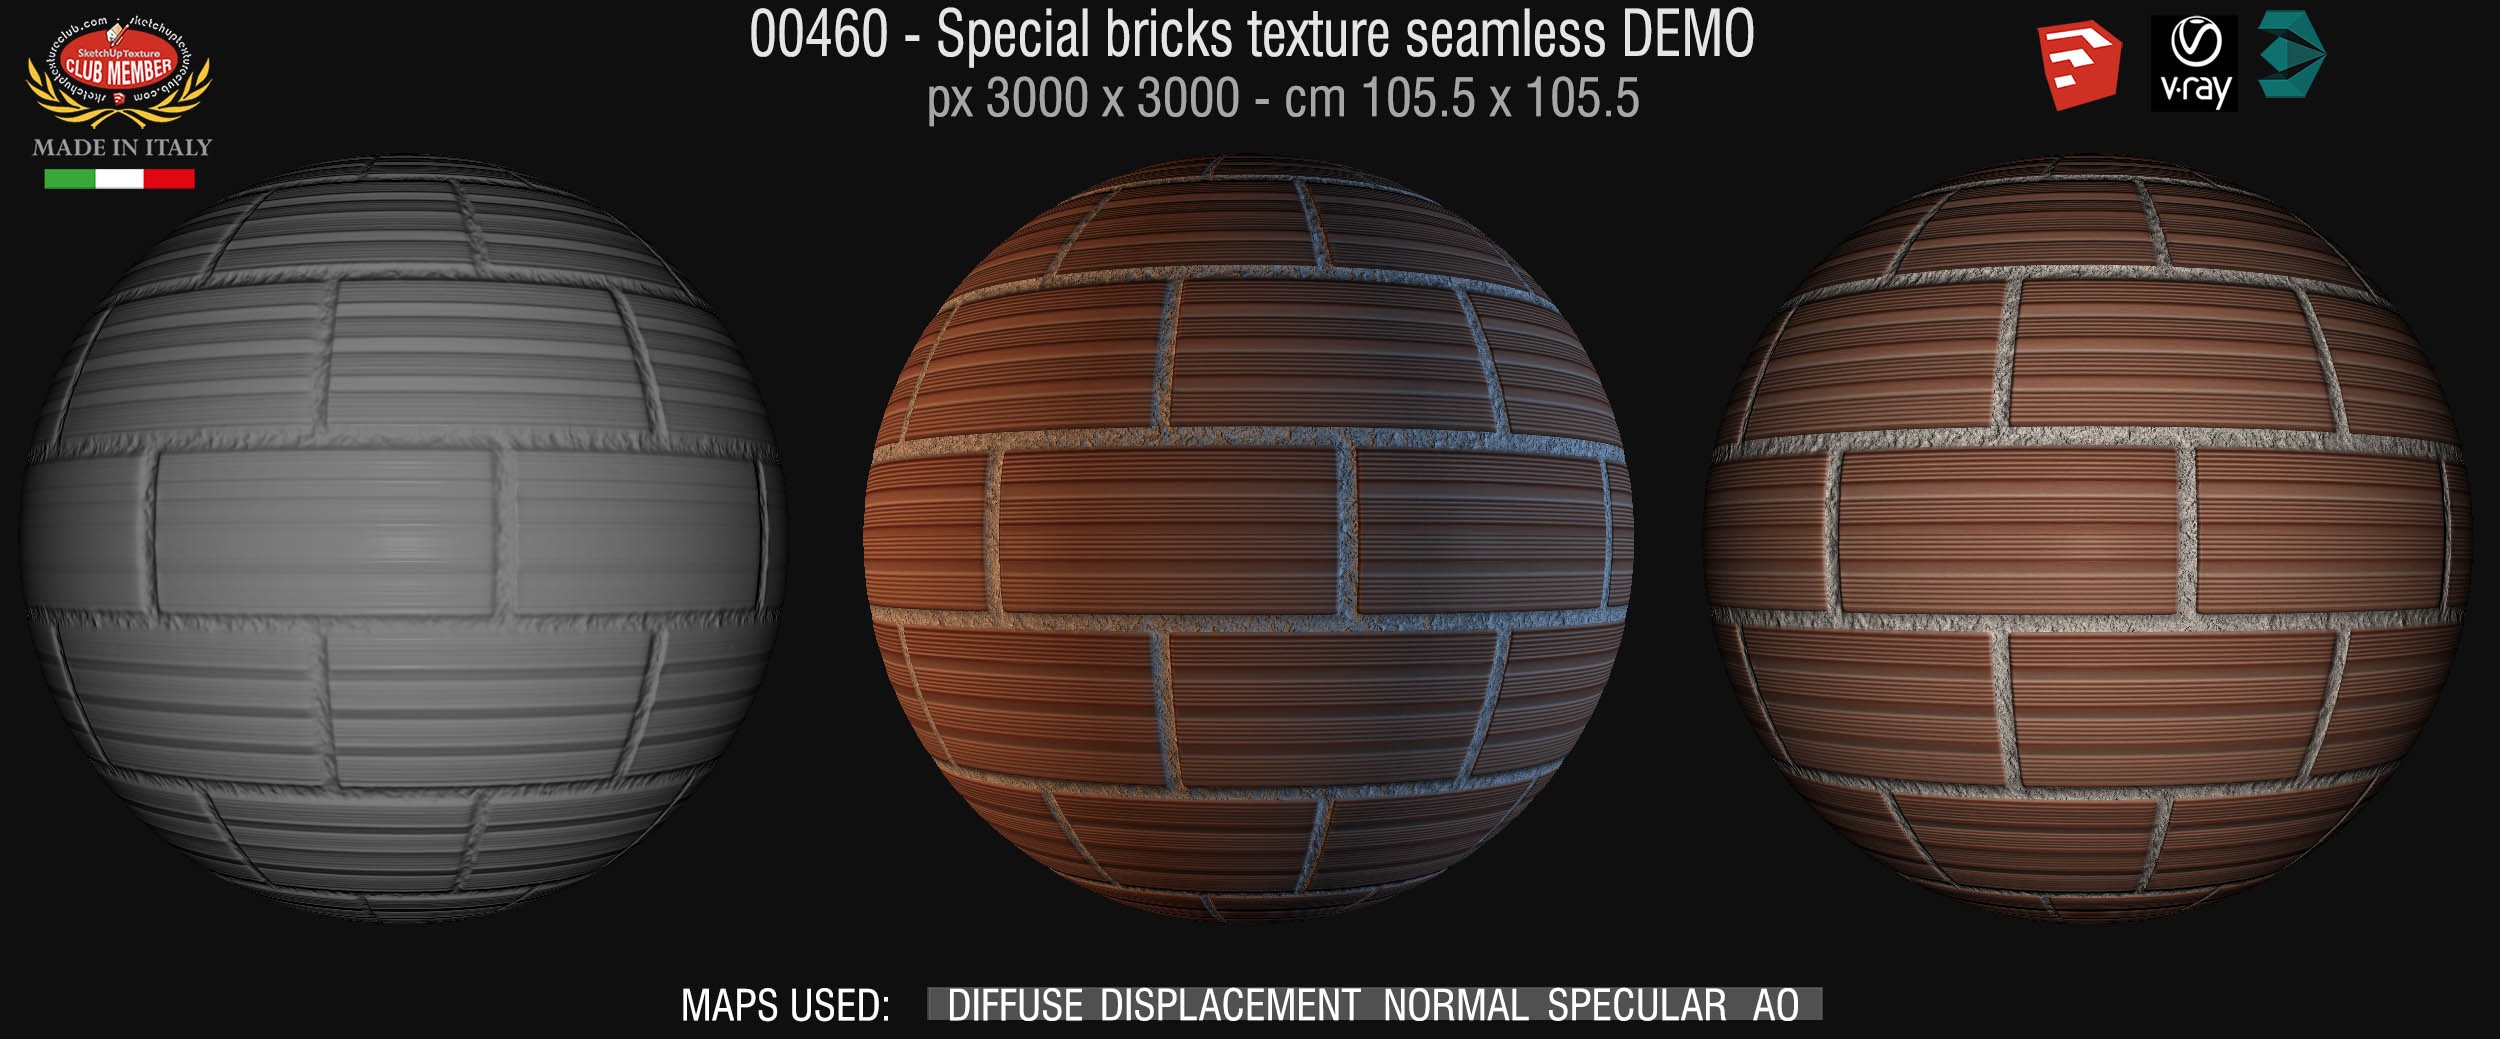 00460 Special bricks texture seamless + maps DEMO